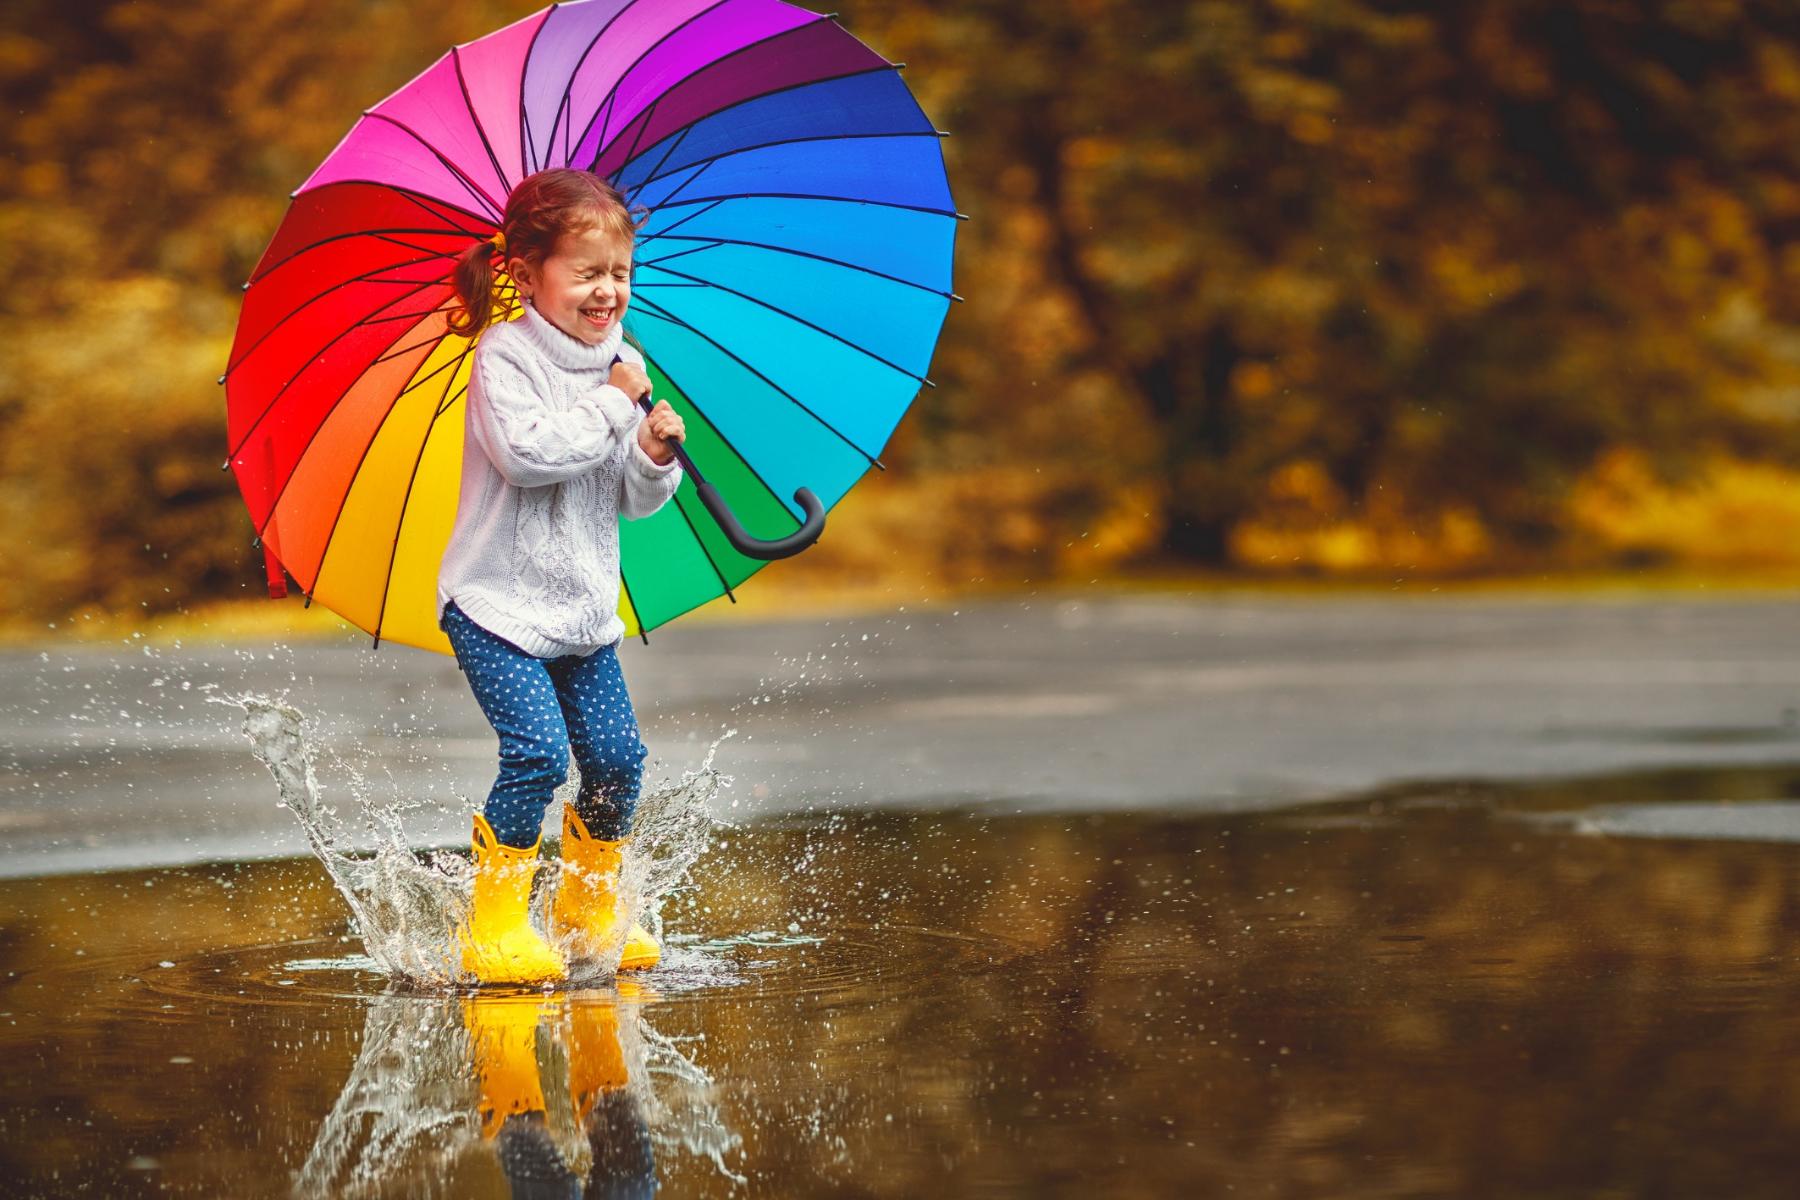 Evgeny_Atamanenko_667327687_Mädchen_springt_im_regen_regenbogenfarbenen_Regenschirm_Herbst